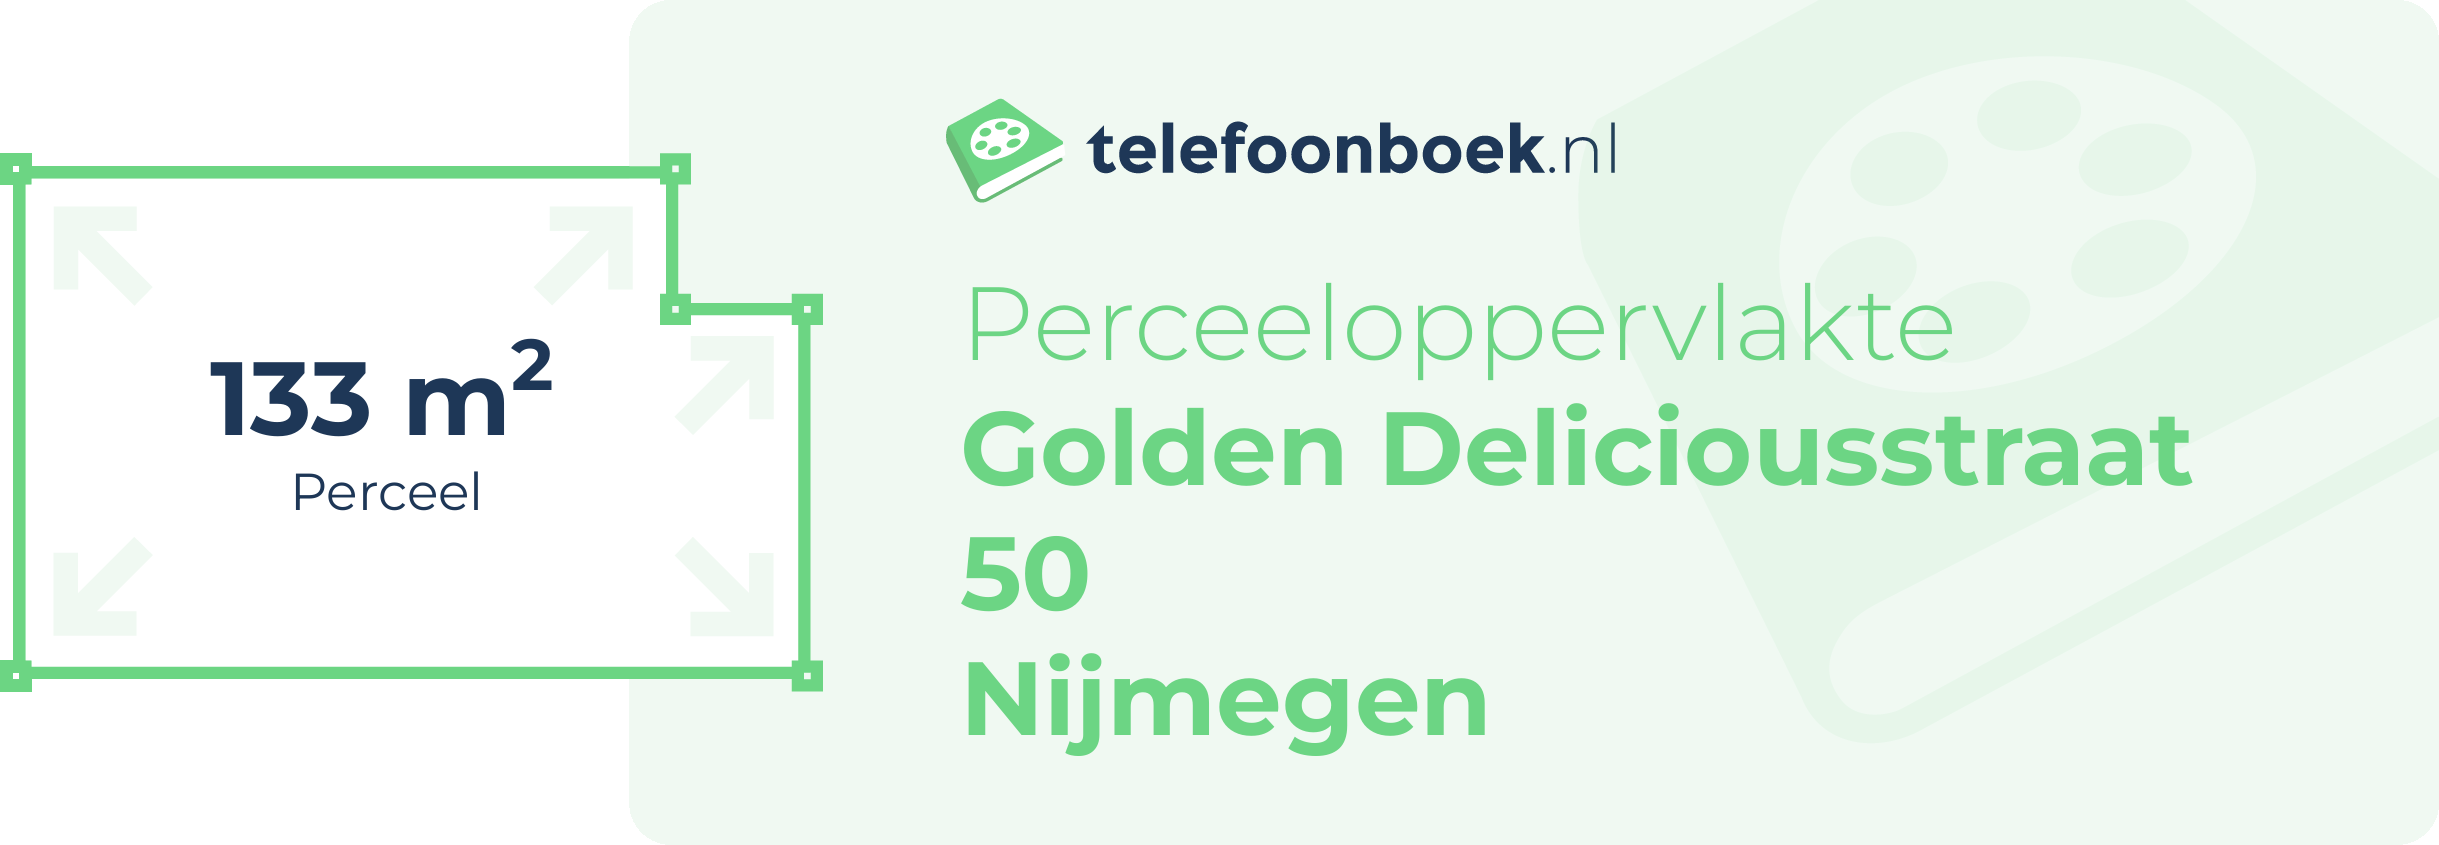 Perceeloppervlakte Golden Deliciousstraat 50 Nijmegen